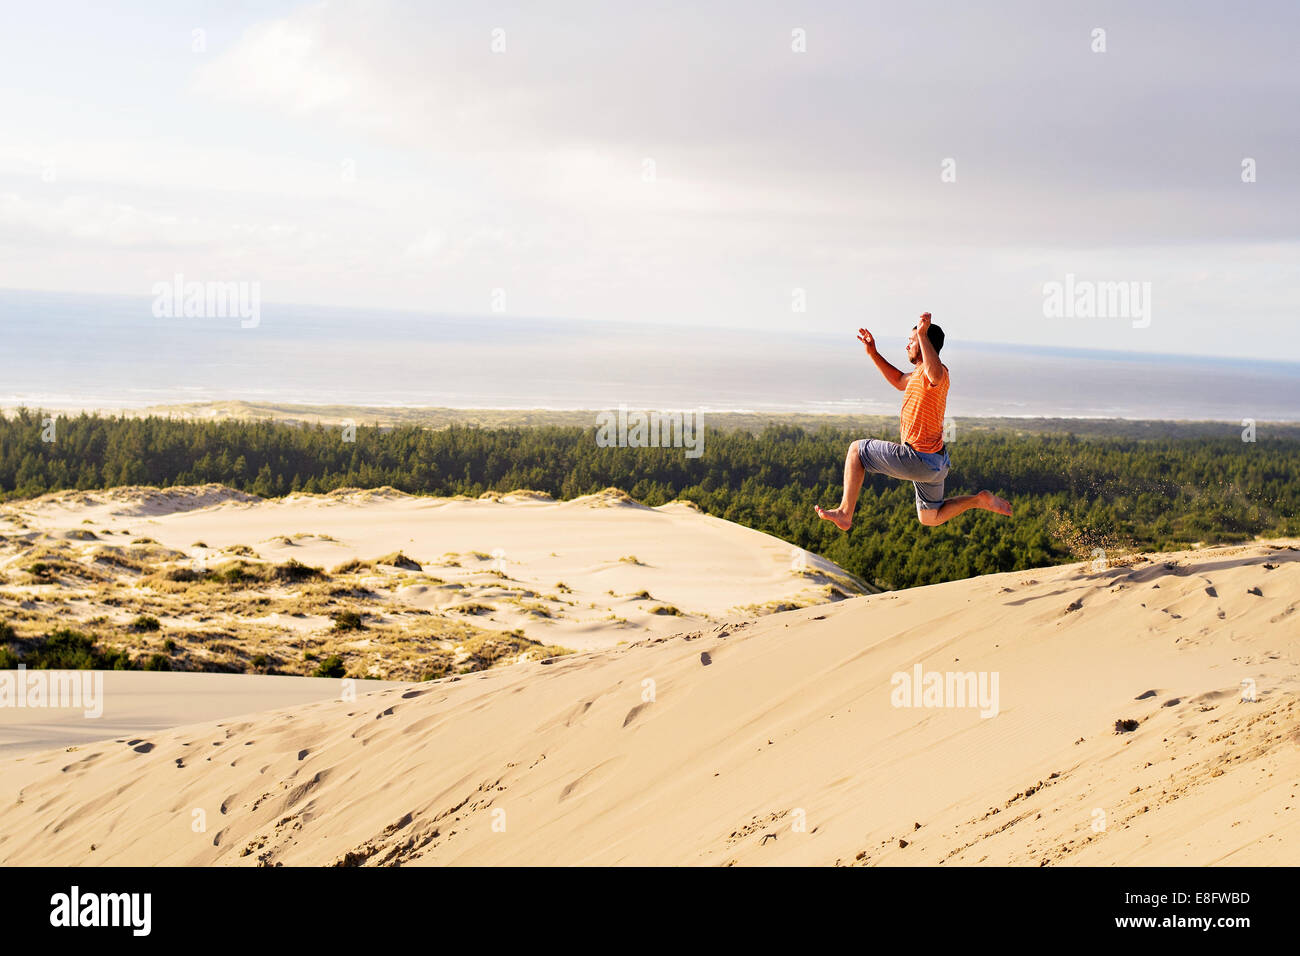 Homme courant et sautant dans les dunes de sable, Etats-Unis Banque D'Images